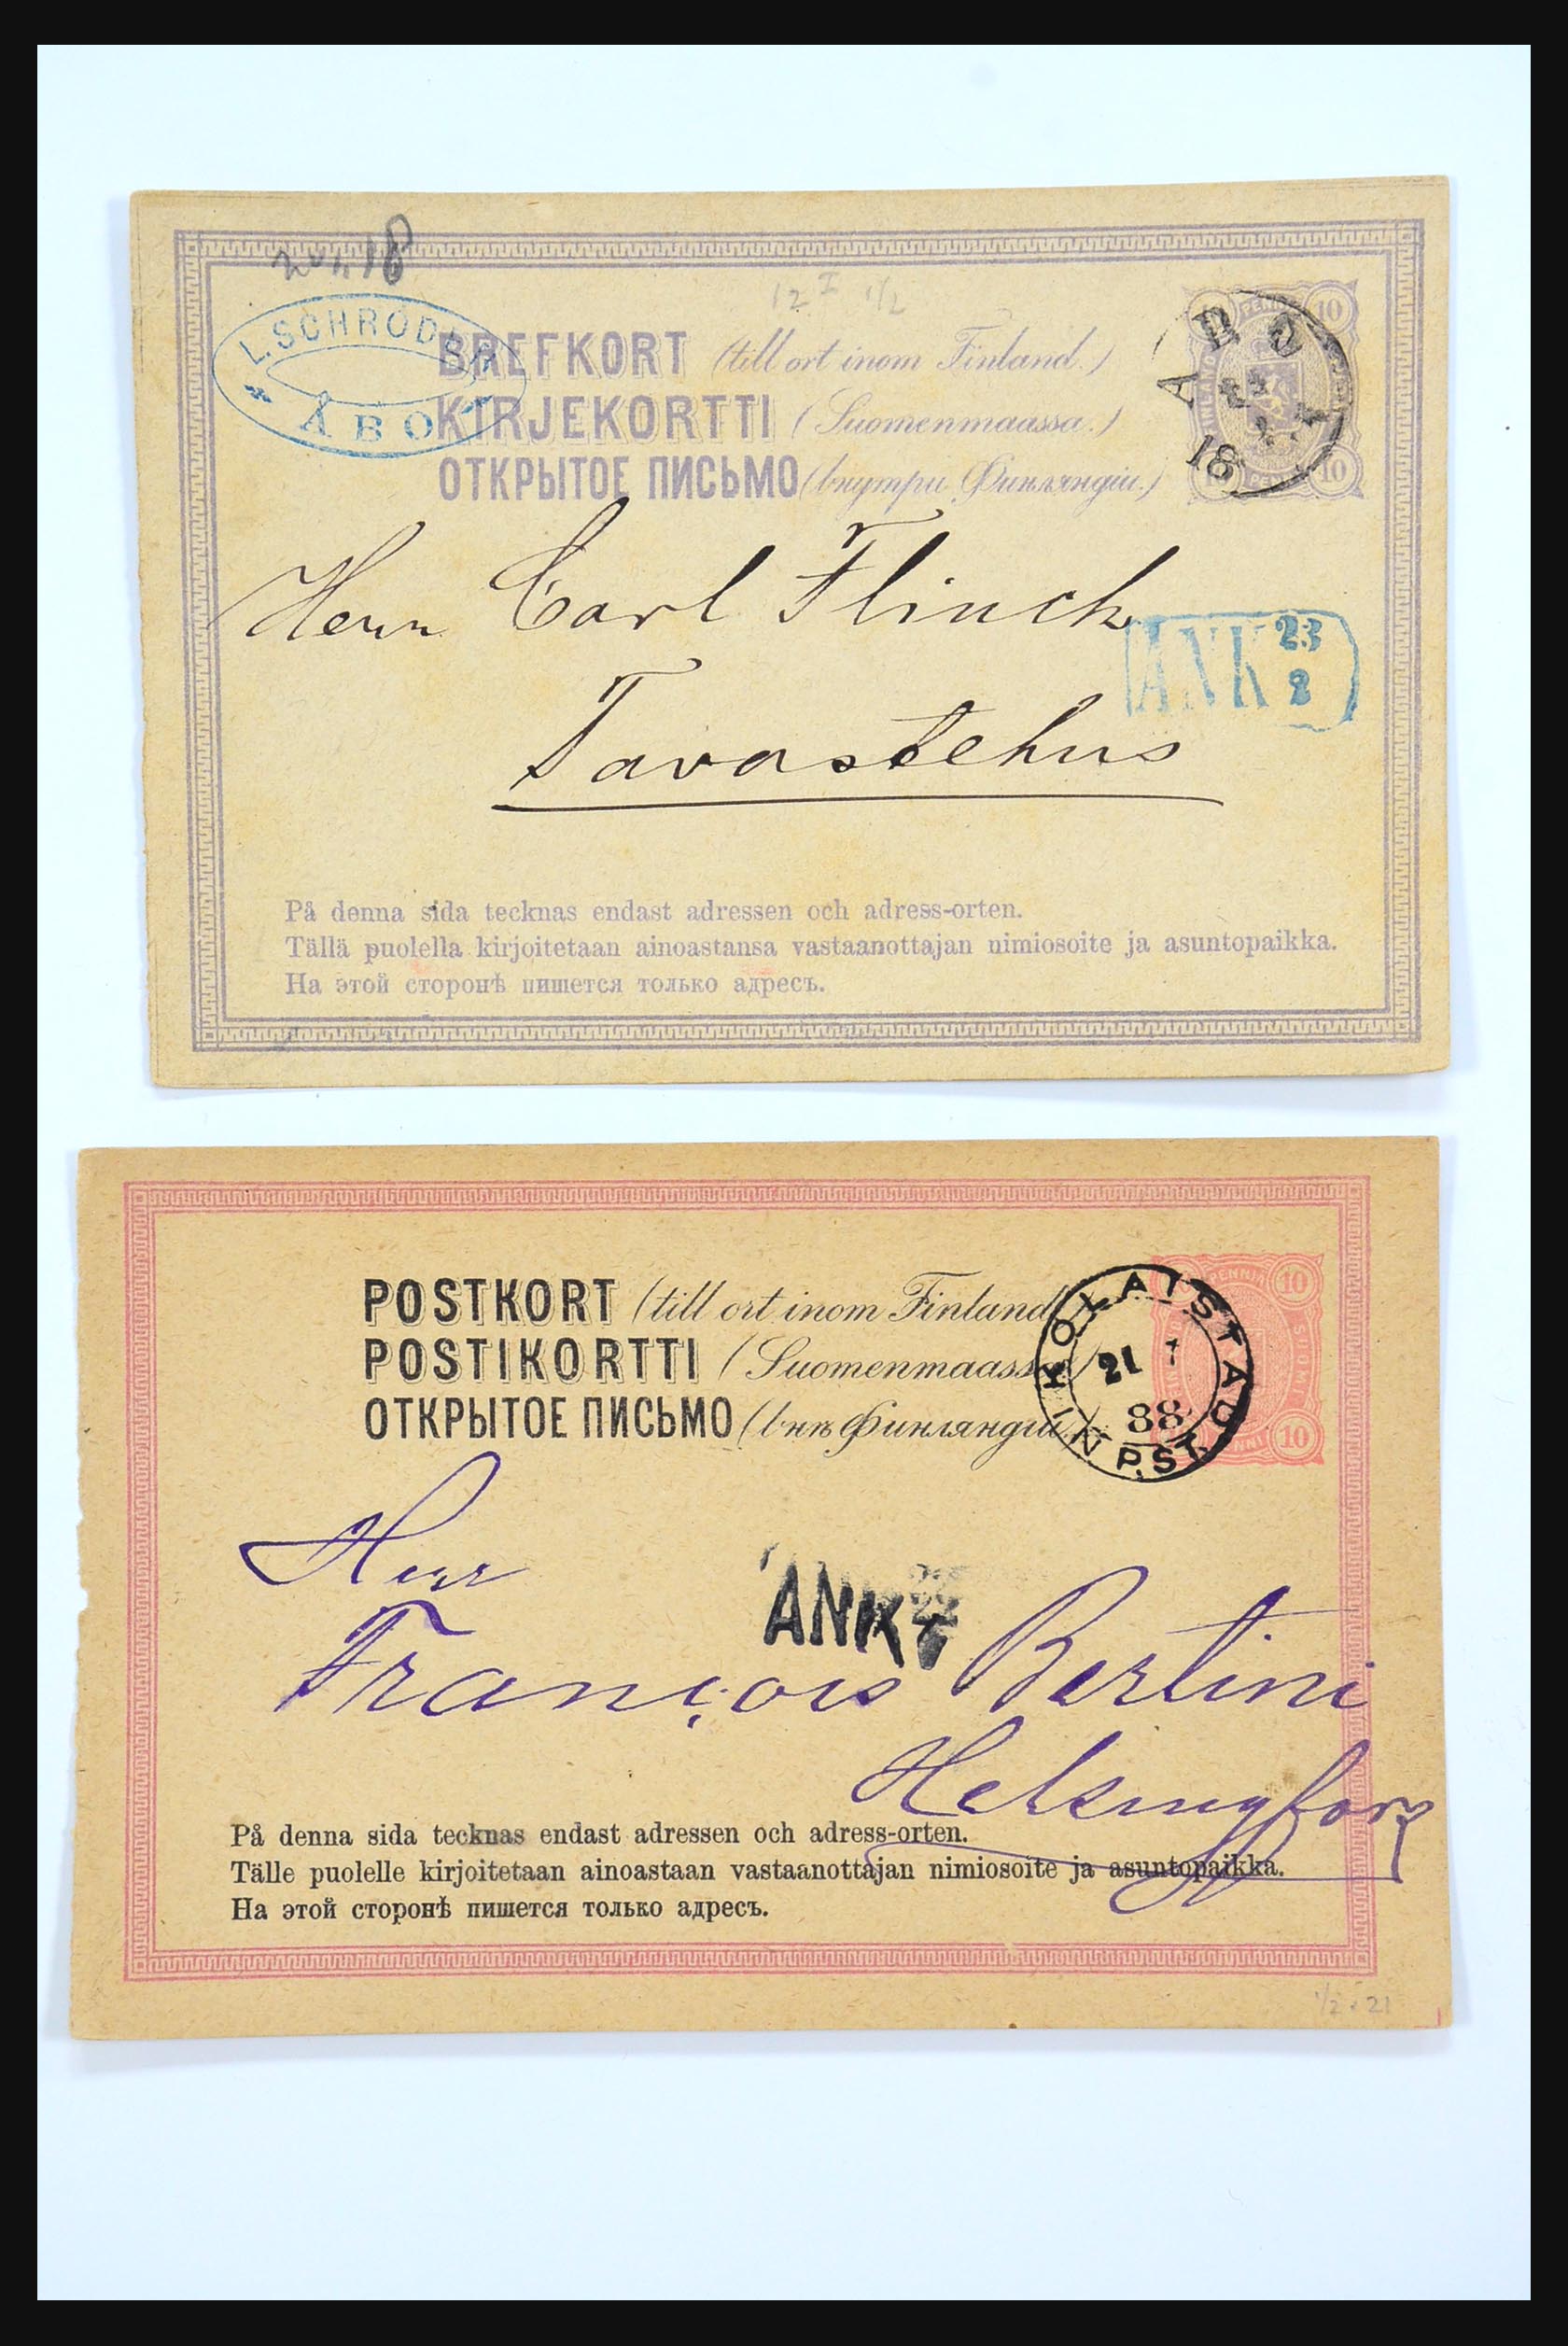 31363 003 - 31363 Finland brieven 1874-1974.